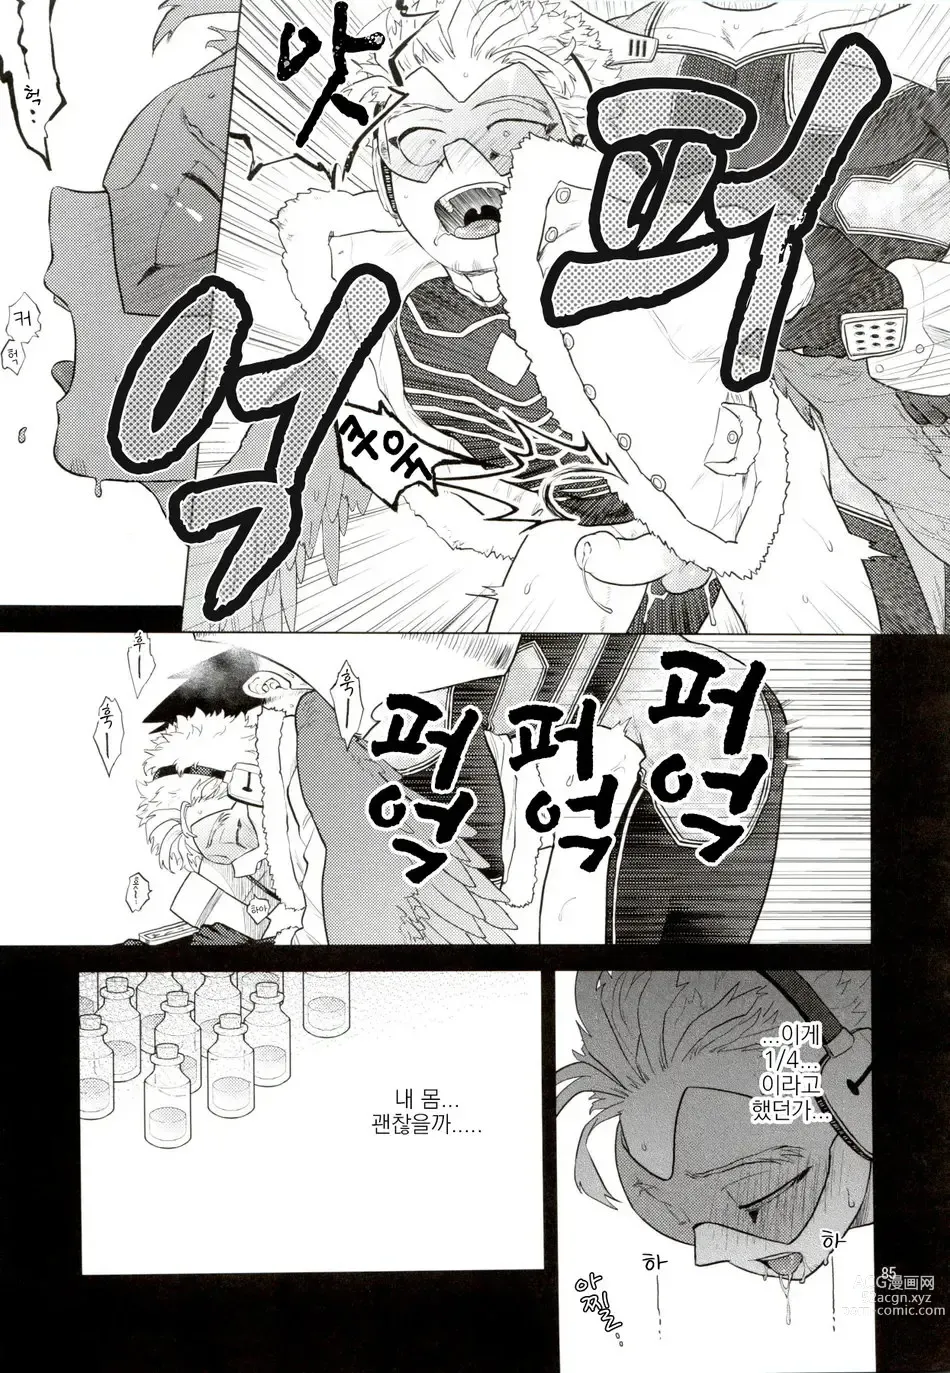 Page 84 of doujinshi Enholog #01